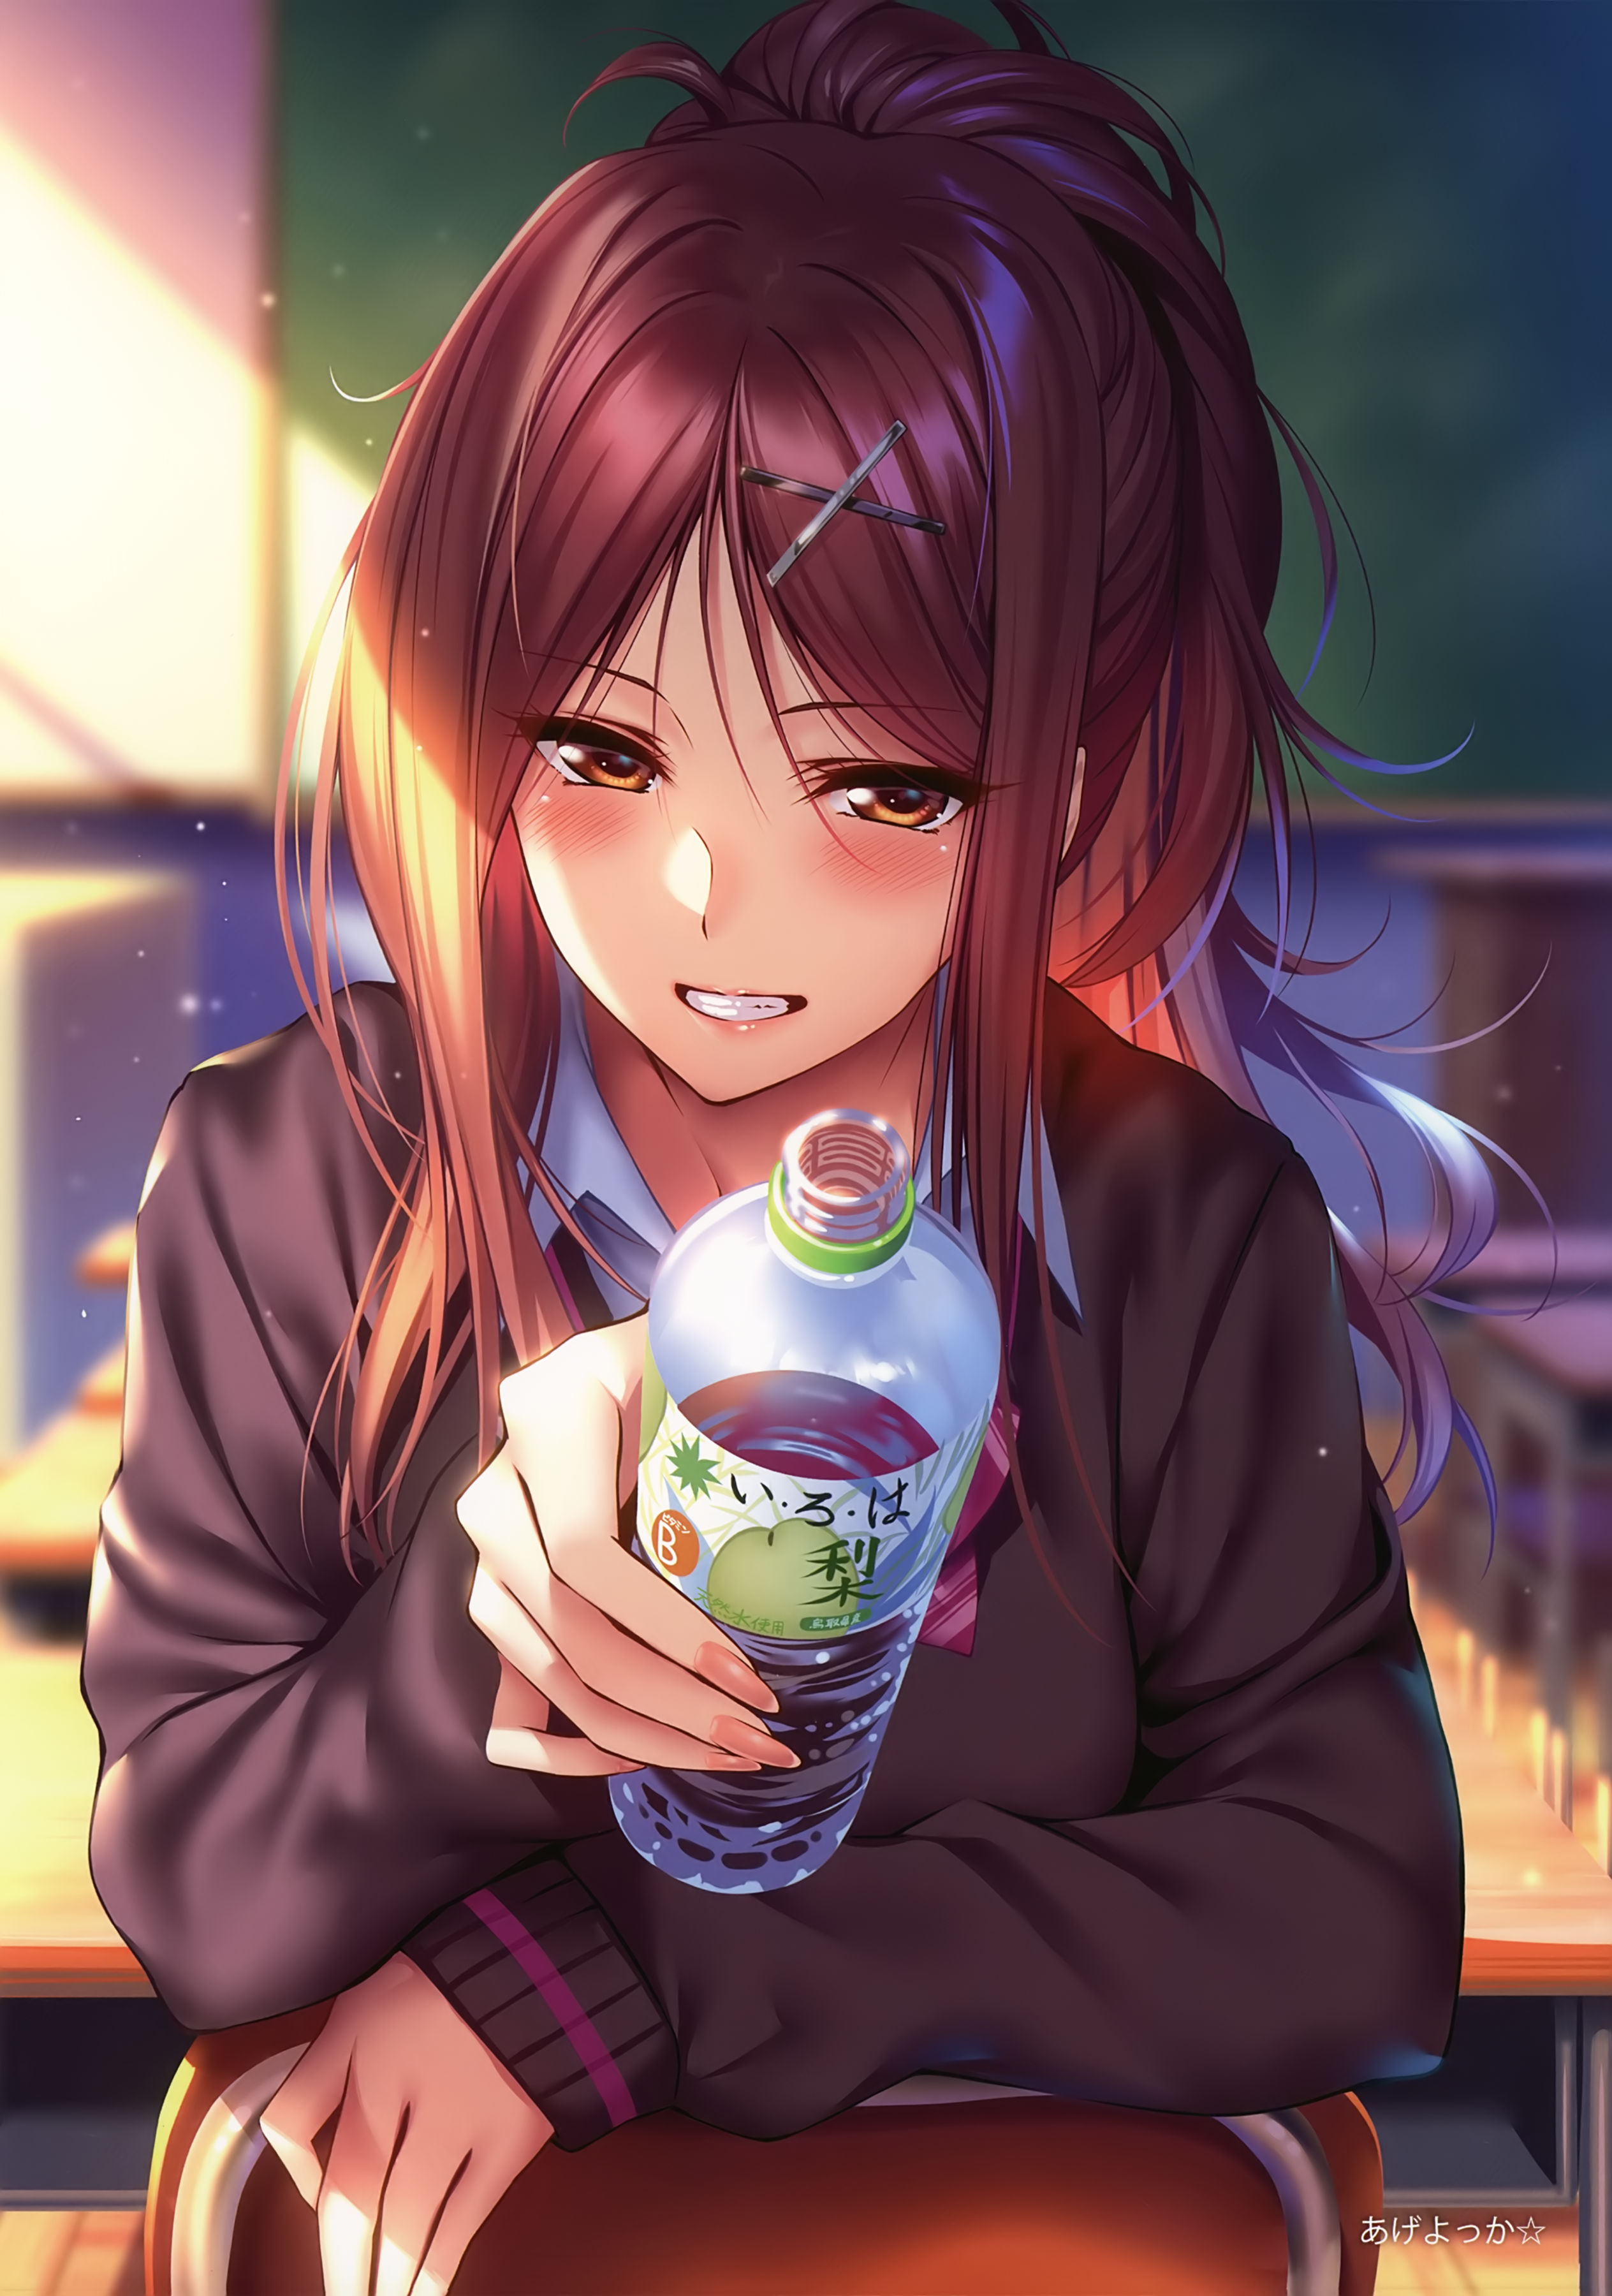 Anime 2528x3600 piromizu anime girls schoolgirl blushing water bottle sunset ponytail Pixiv